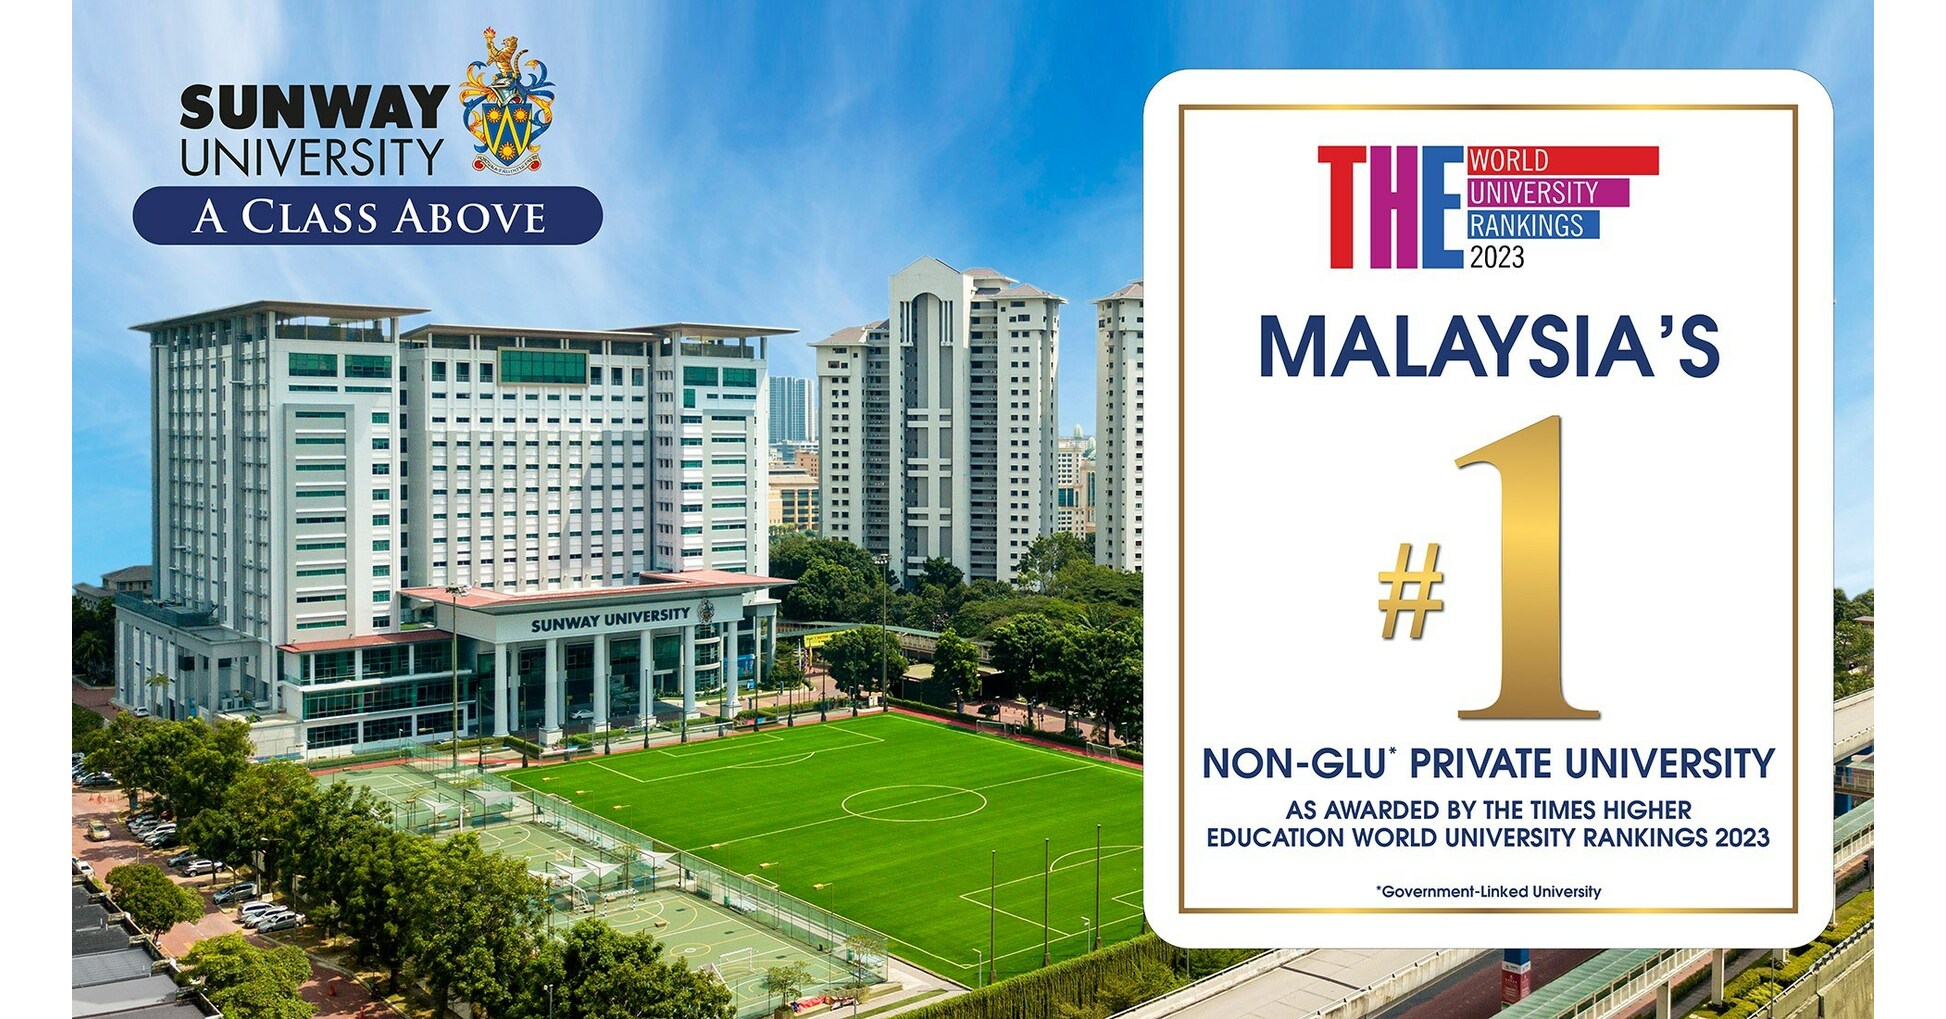 双威大学在马来西亚排名第一的非 GLU 私立大学